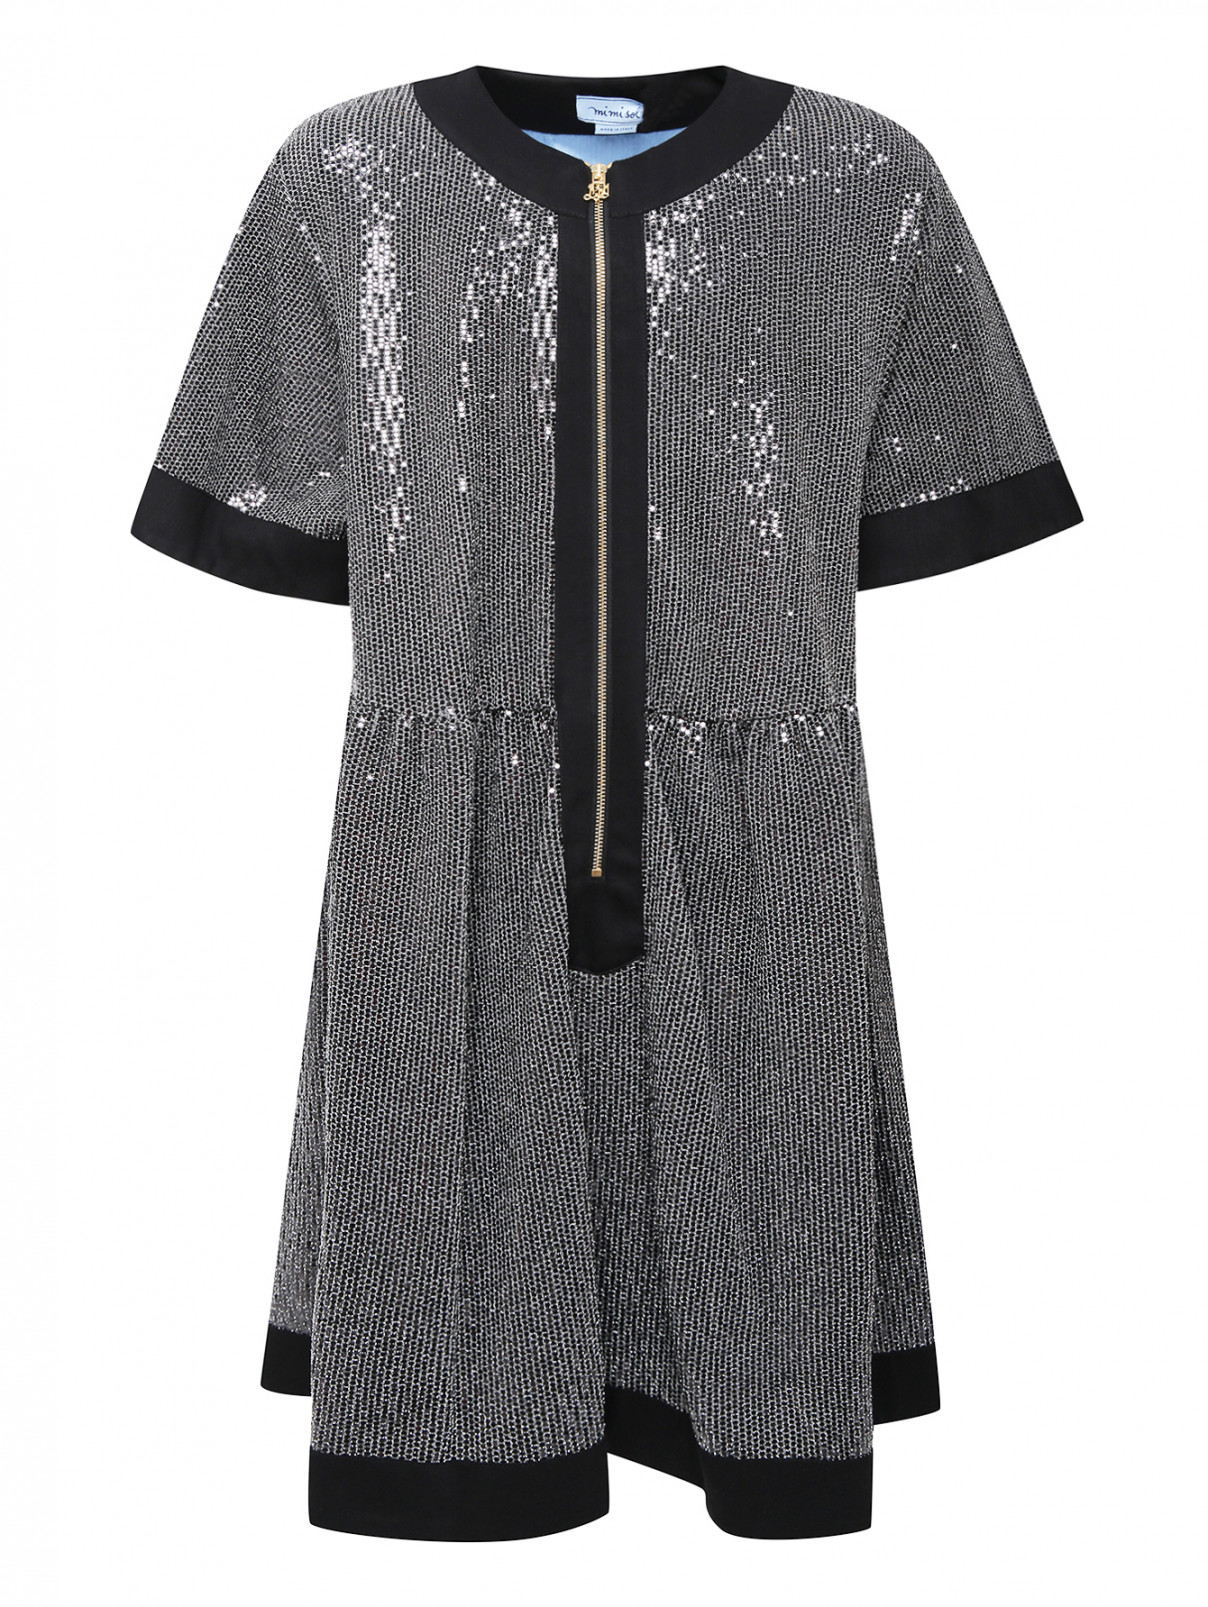 Платье свободного кроя с пайетками MiMiSol  –  Общий вид  – Цвет:  Черный